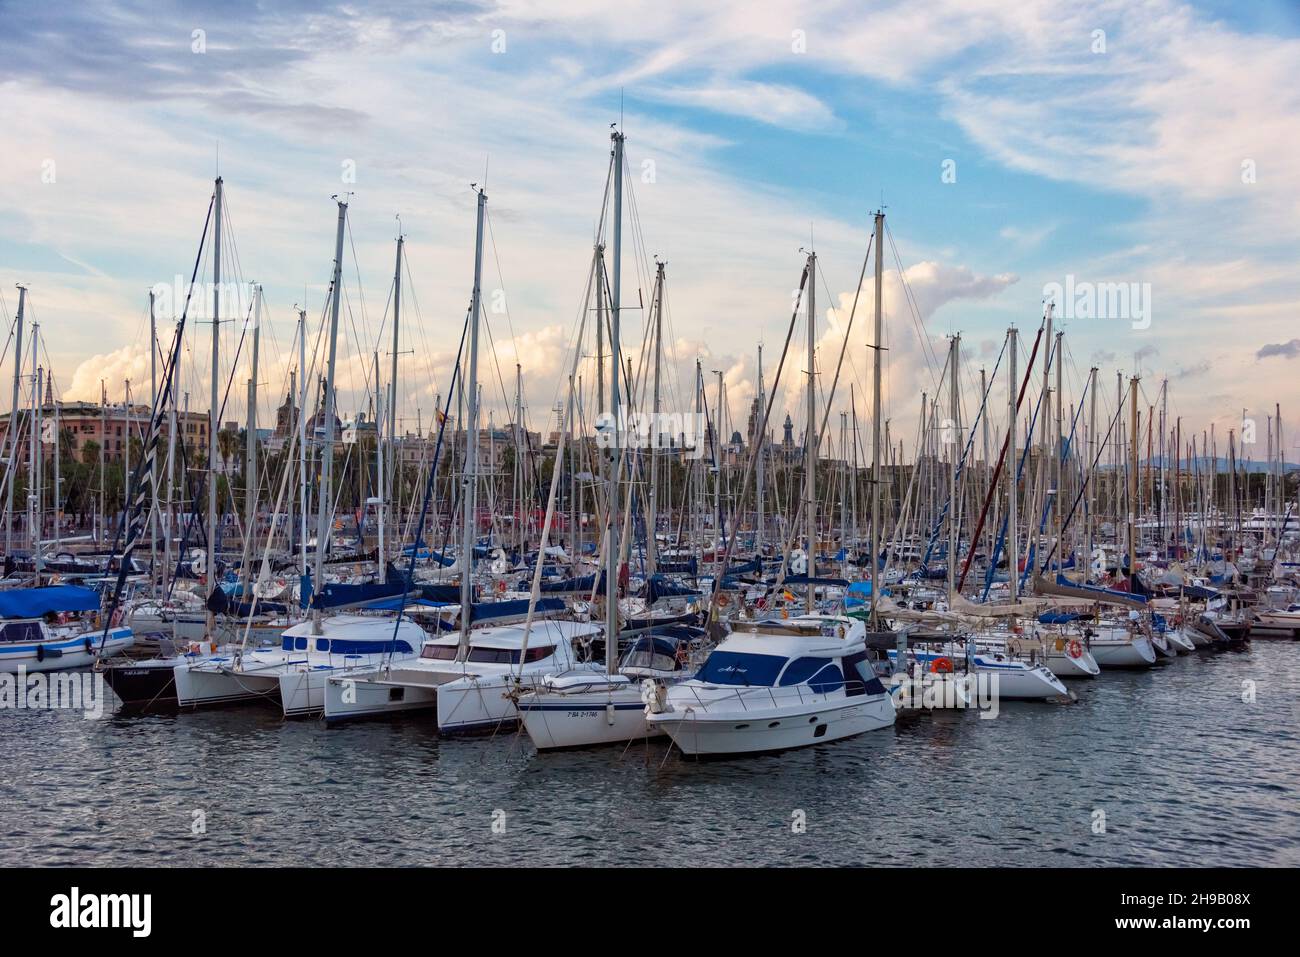 Sailboats in the harbor, Barcelona, Barcelona Province, Catalonia Autonomous Community, Spain Stock Photo